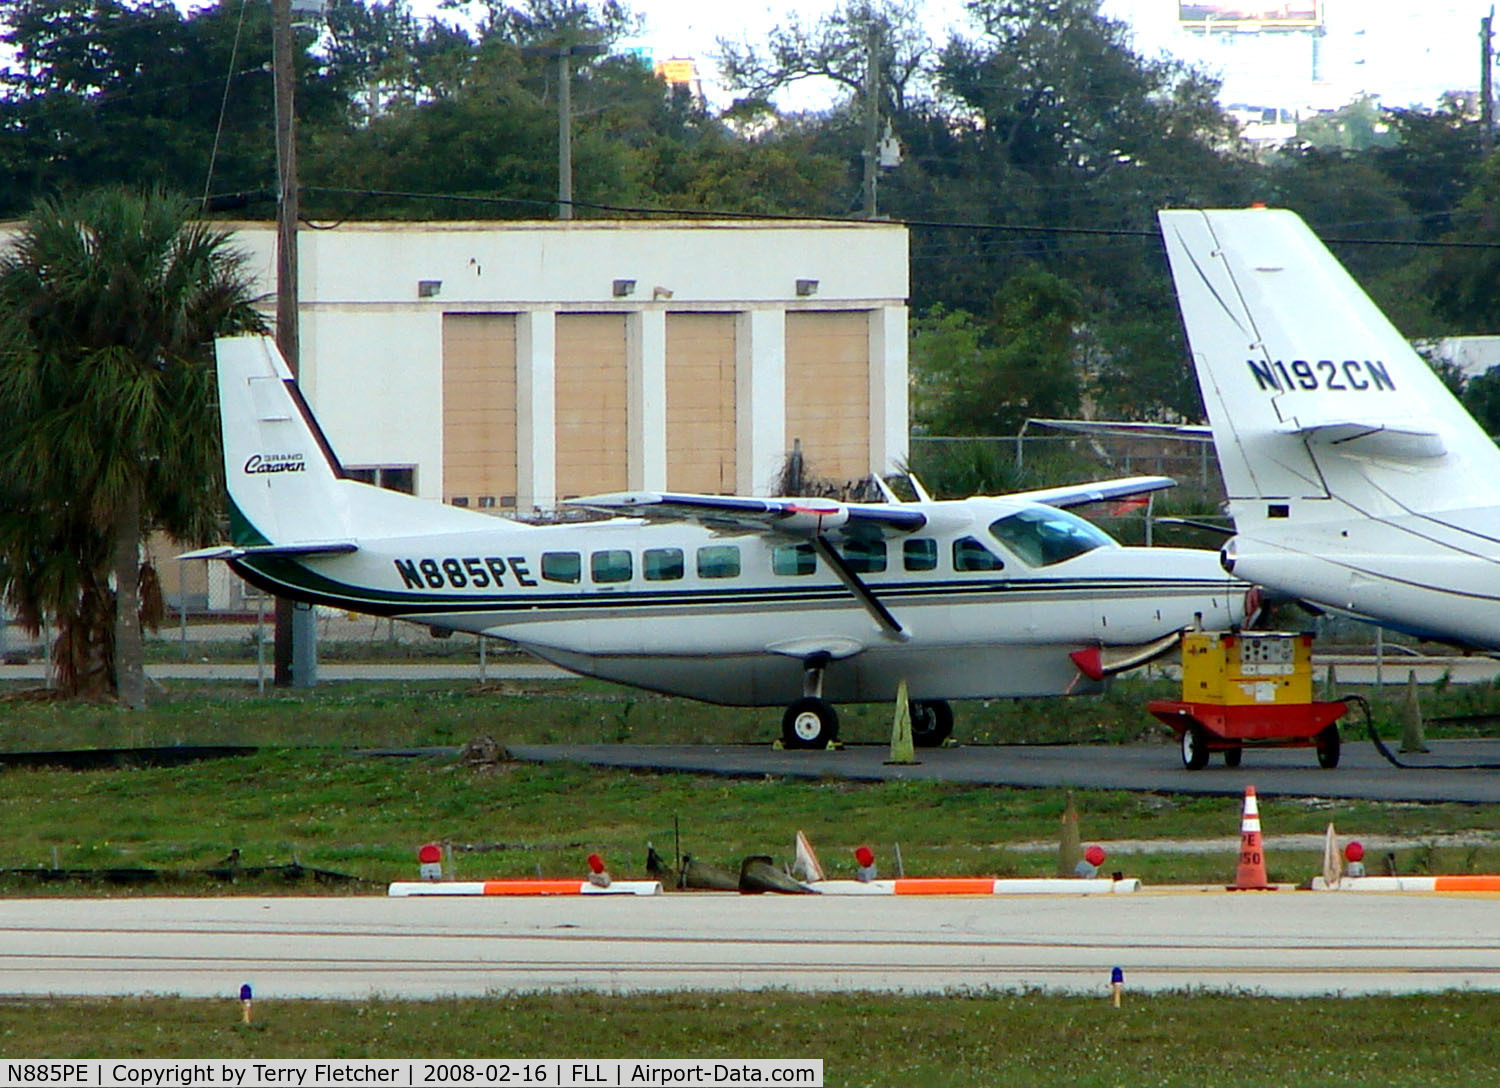 N885PE, 2001 Cessna 208B Grand Caravan C/N 208B0885, Cessna Caravan at FLL in Feb 2008